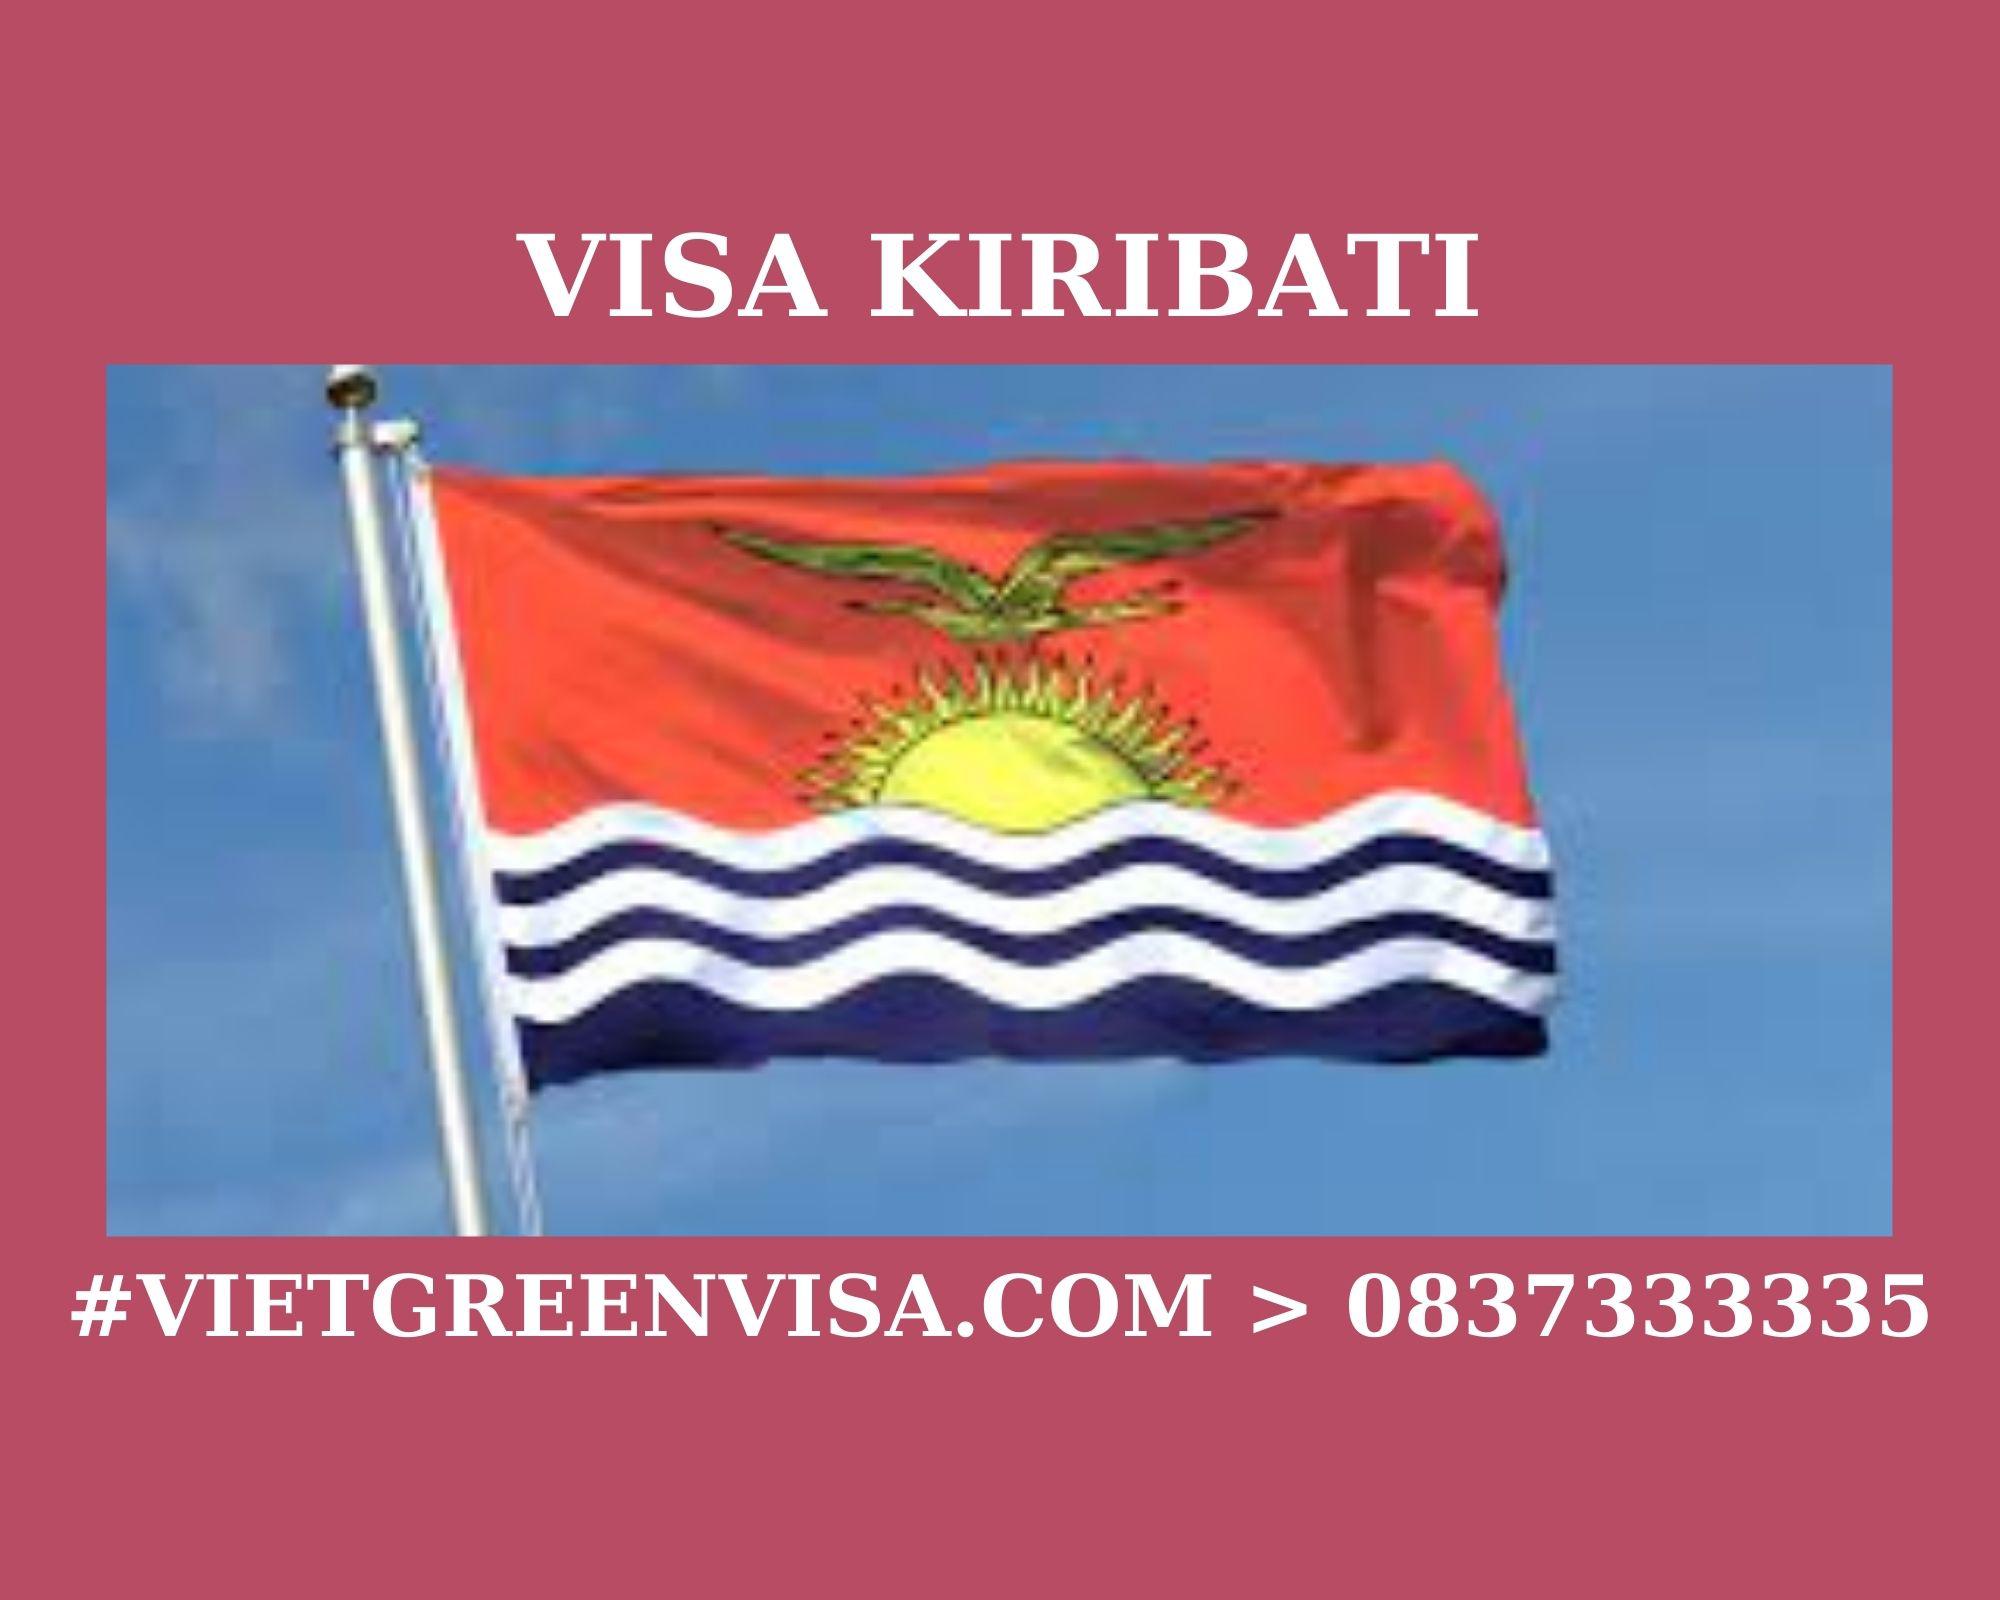 Xin Visa Kiribati trọn gói tại Hà Nội, Hồ Chí Minh